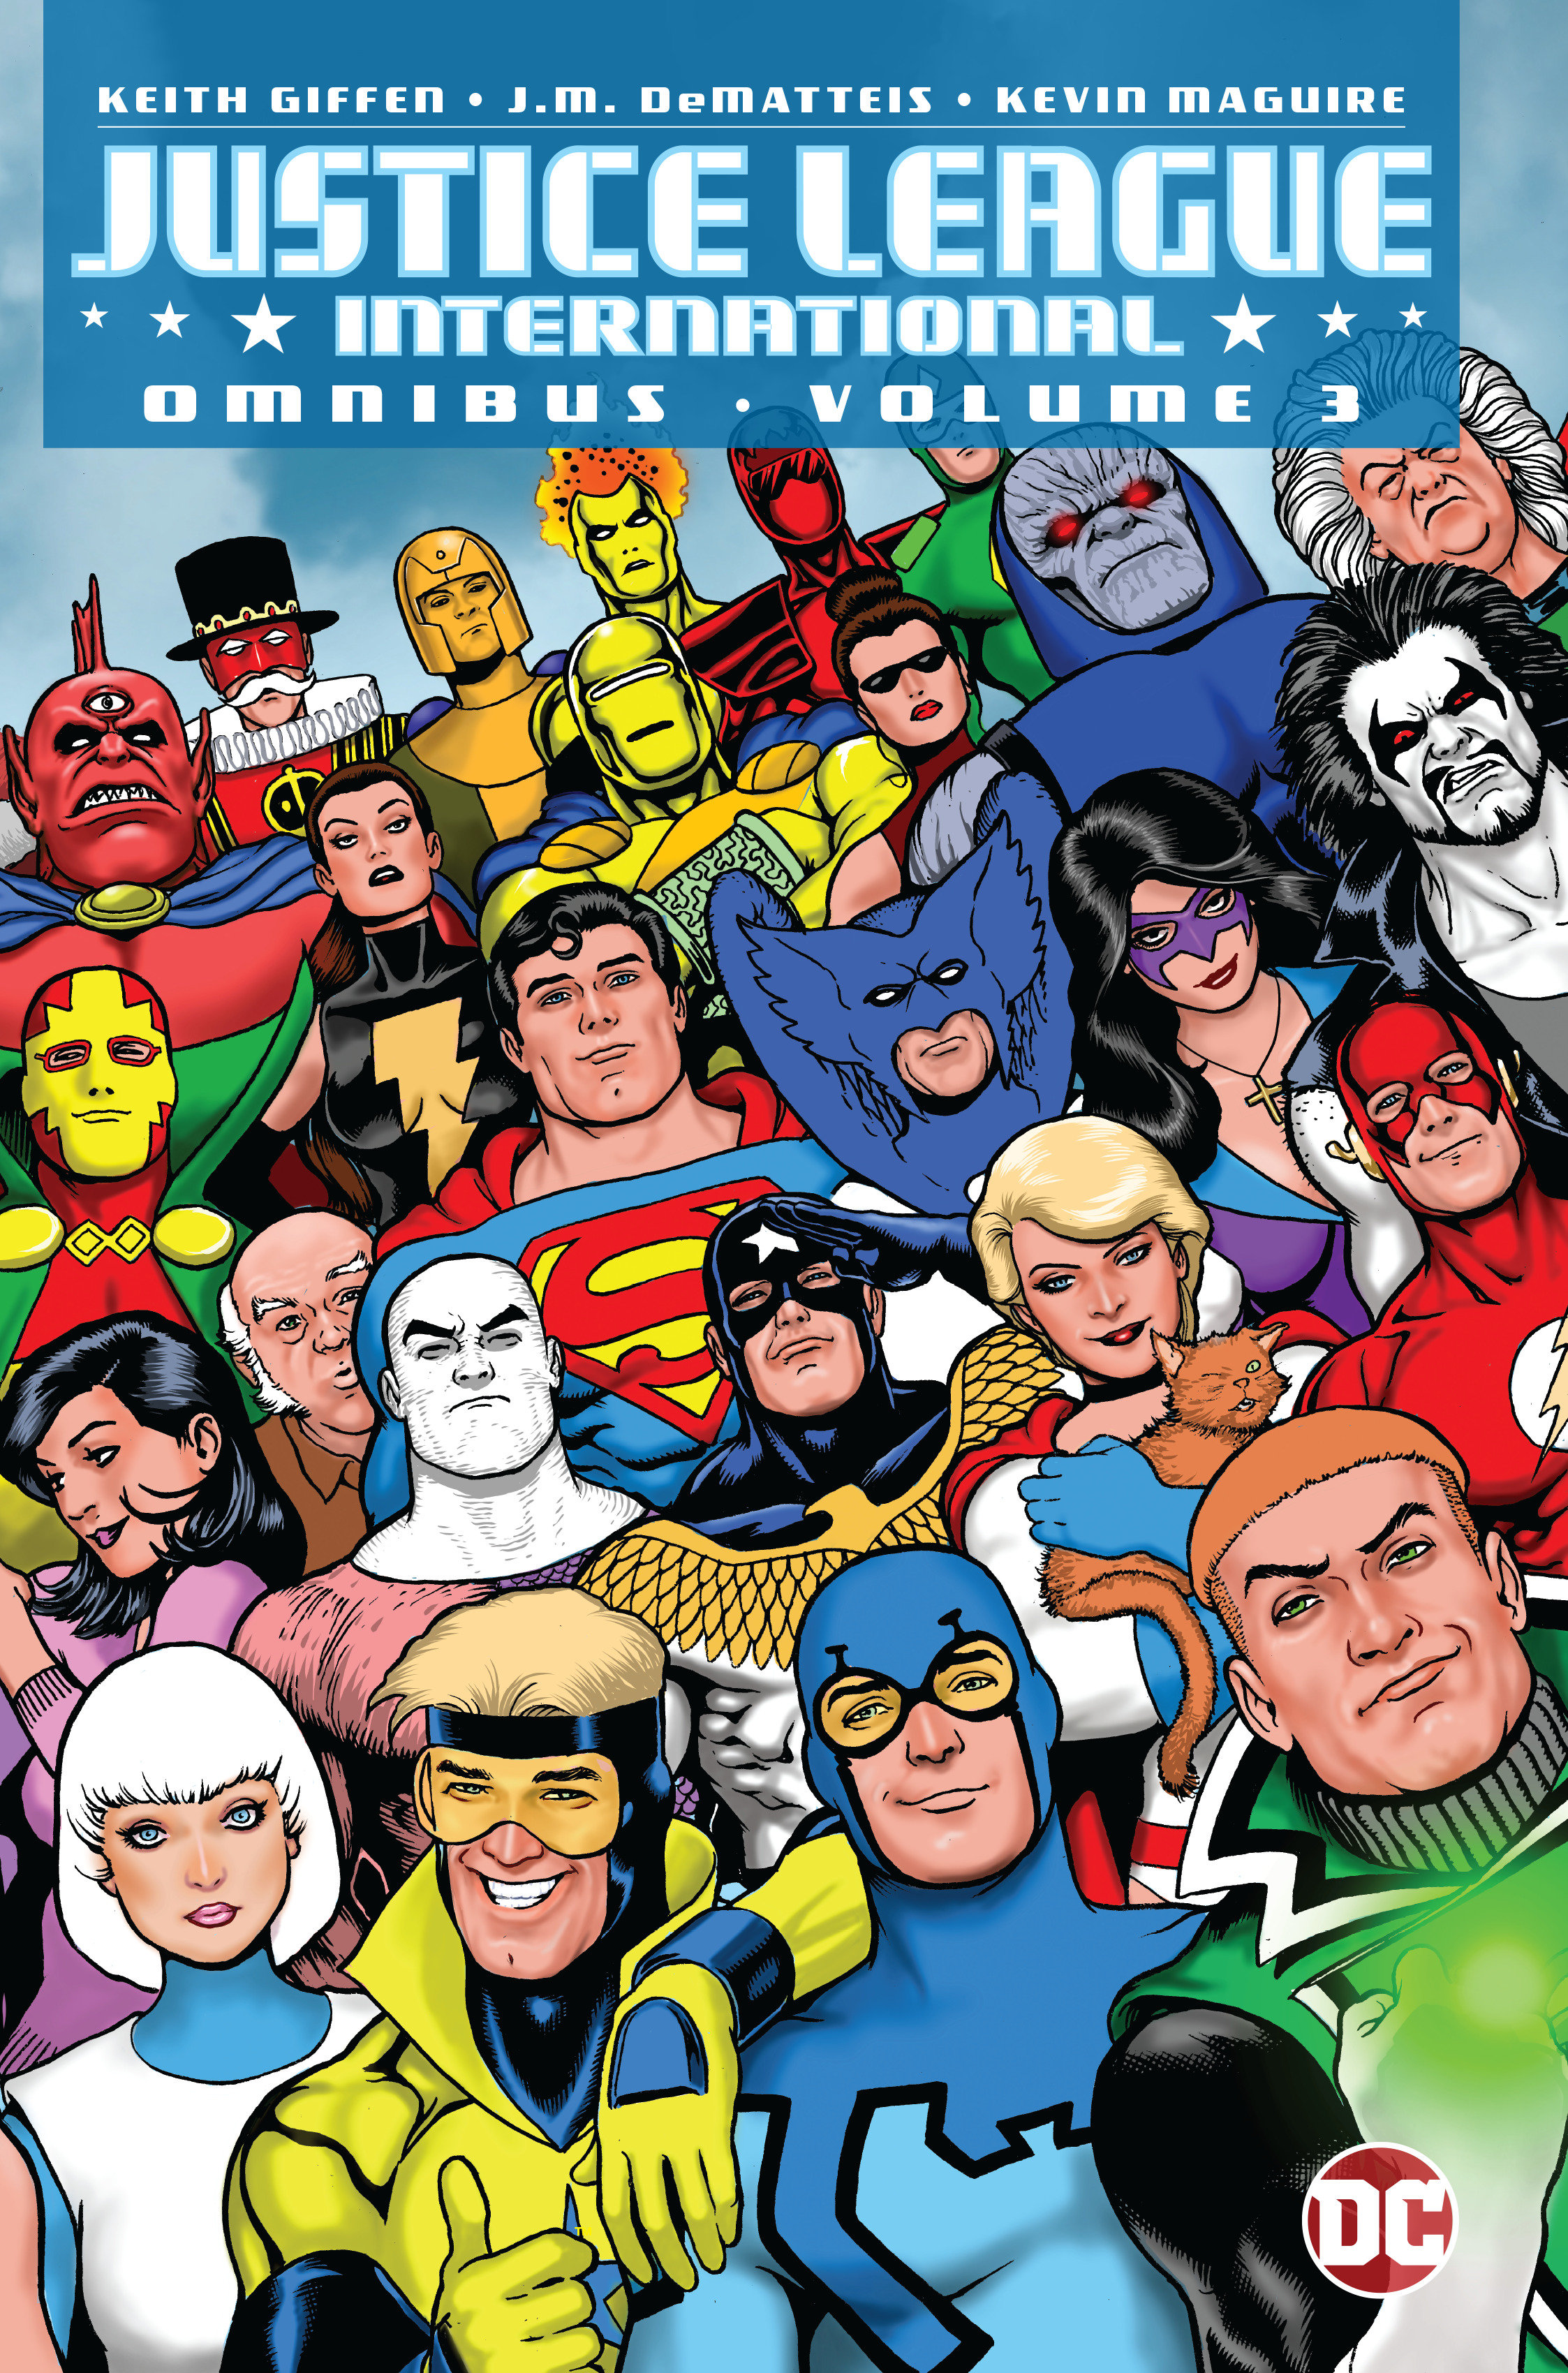 Justice League International Omnibus Hardcover Volume 3